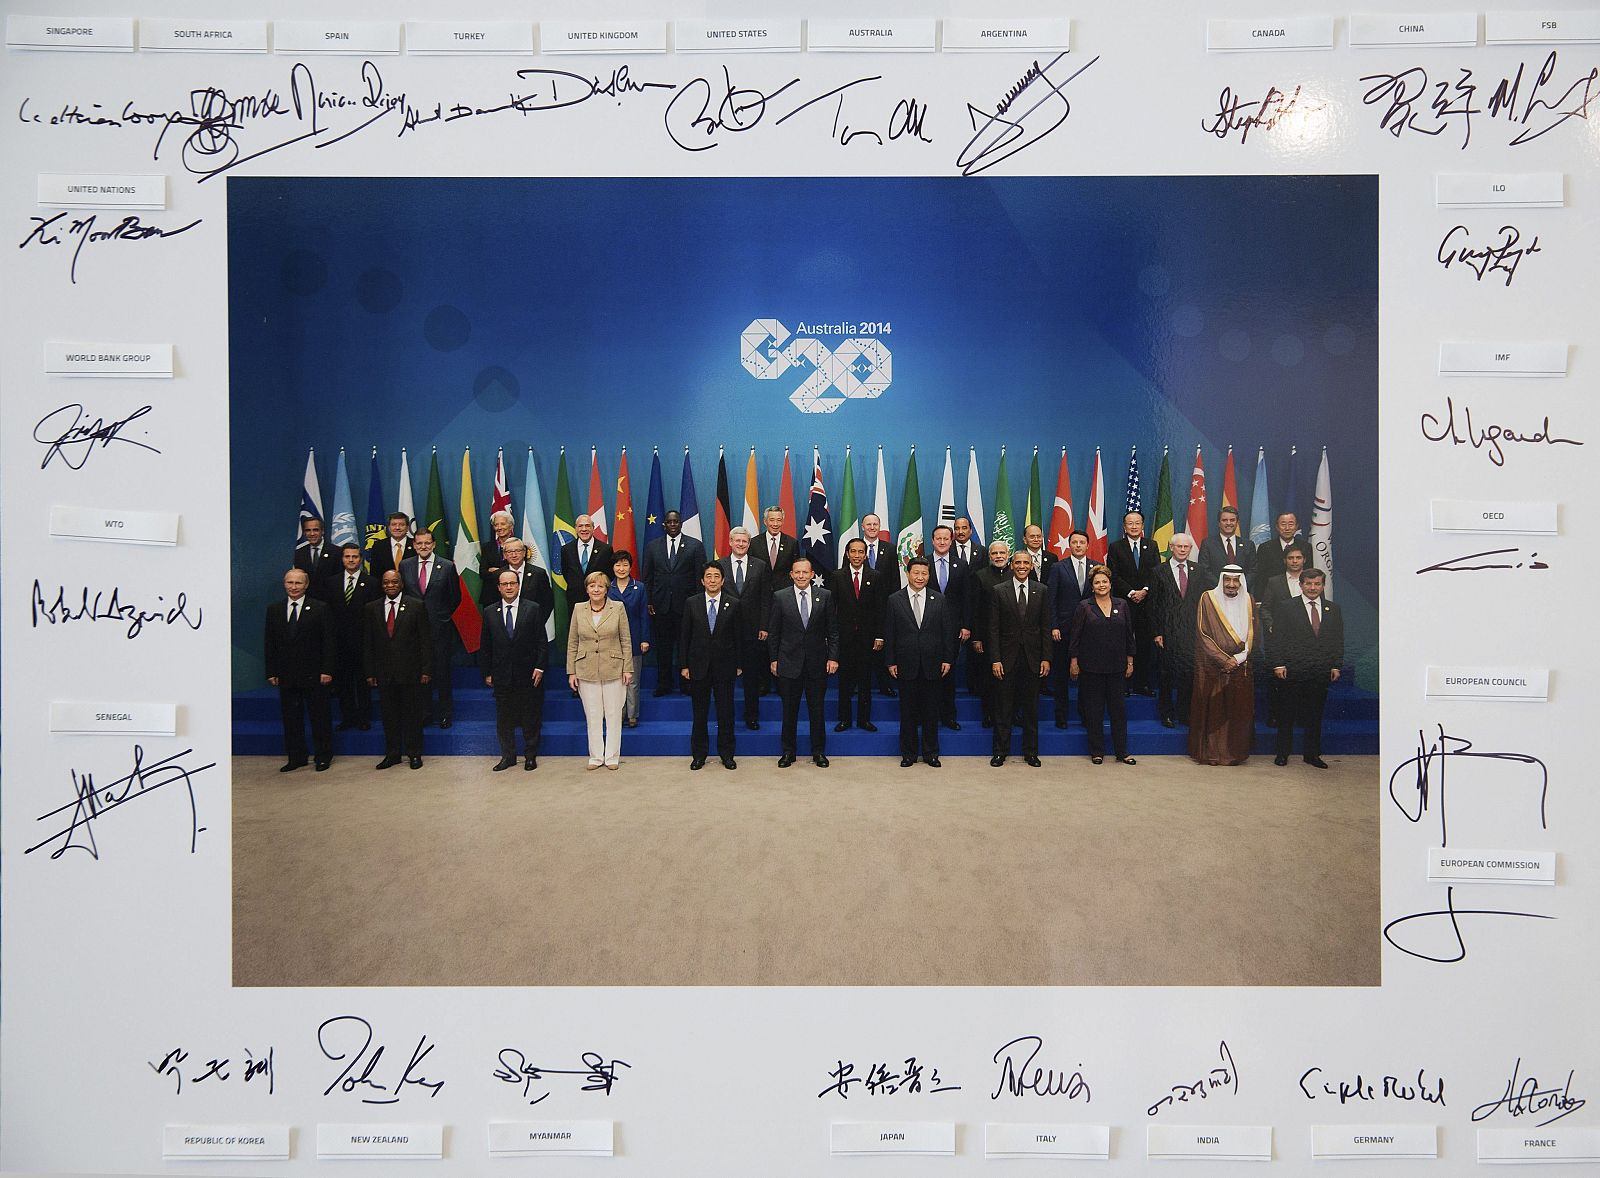 Foto oficial de los líderes del G-20 celebrado en Brisbane